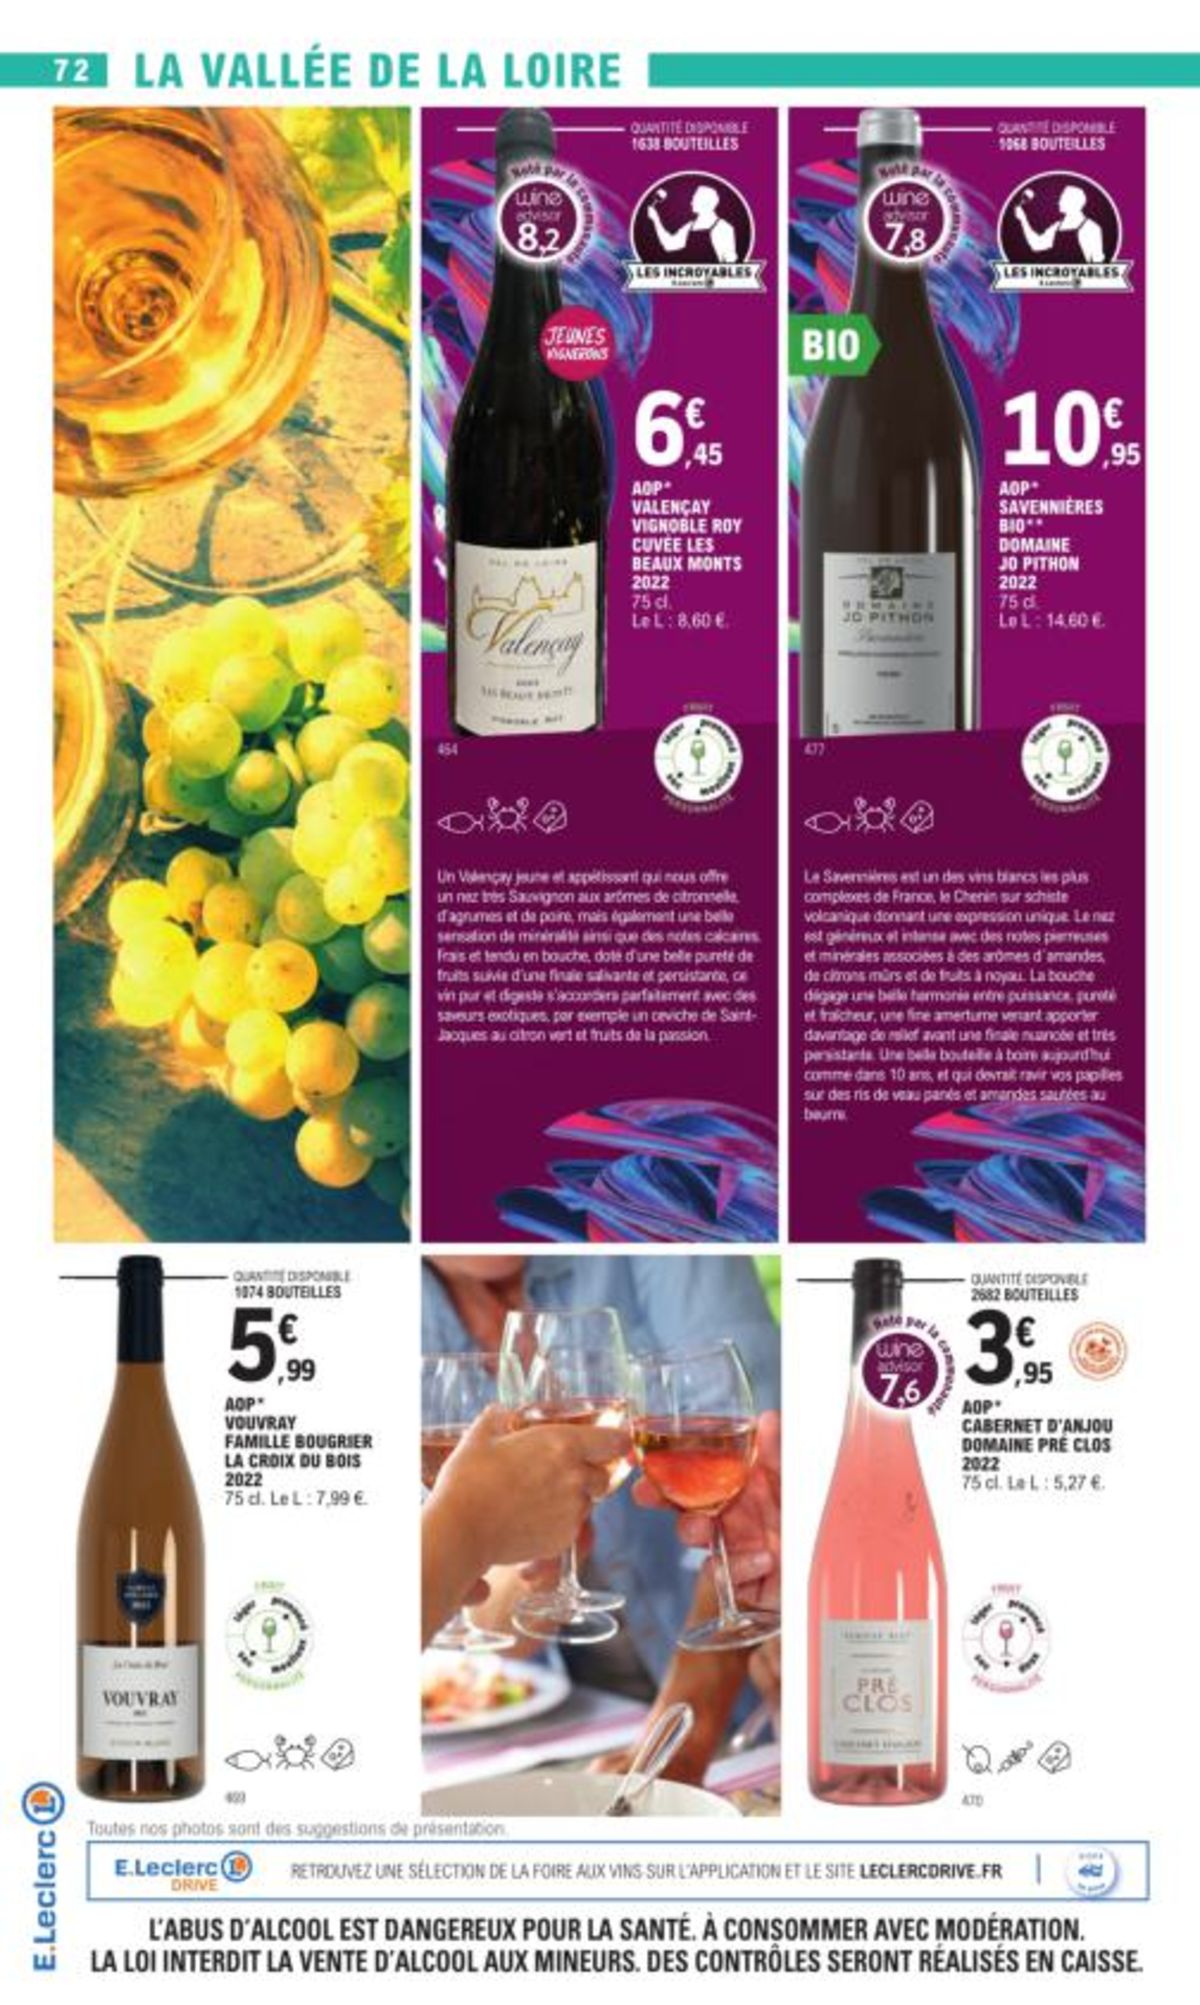 Catalogue Foire Aux Vins - Mixte, page 02952